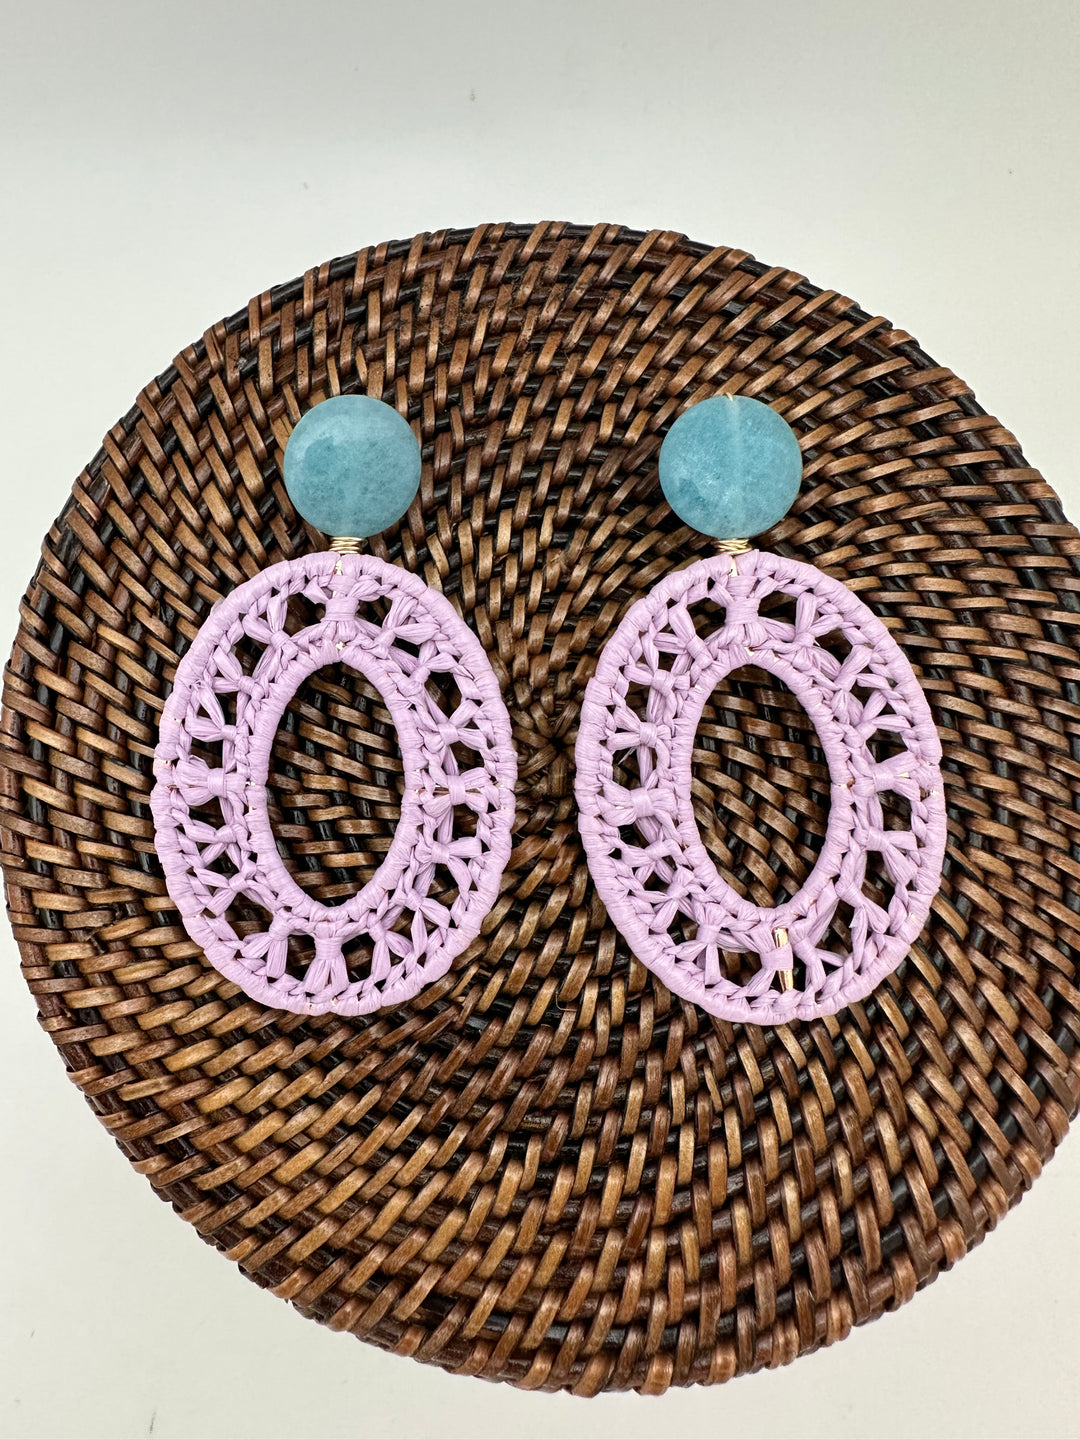 Lavender Crocheted Raffia Wrapped Earrings